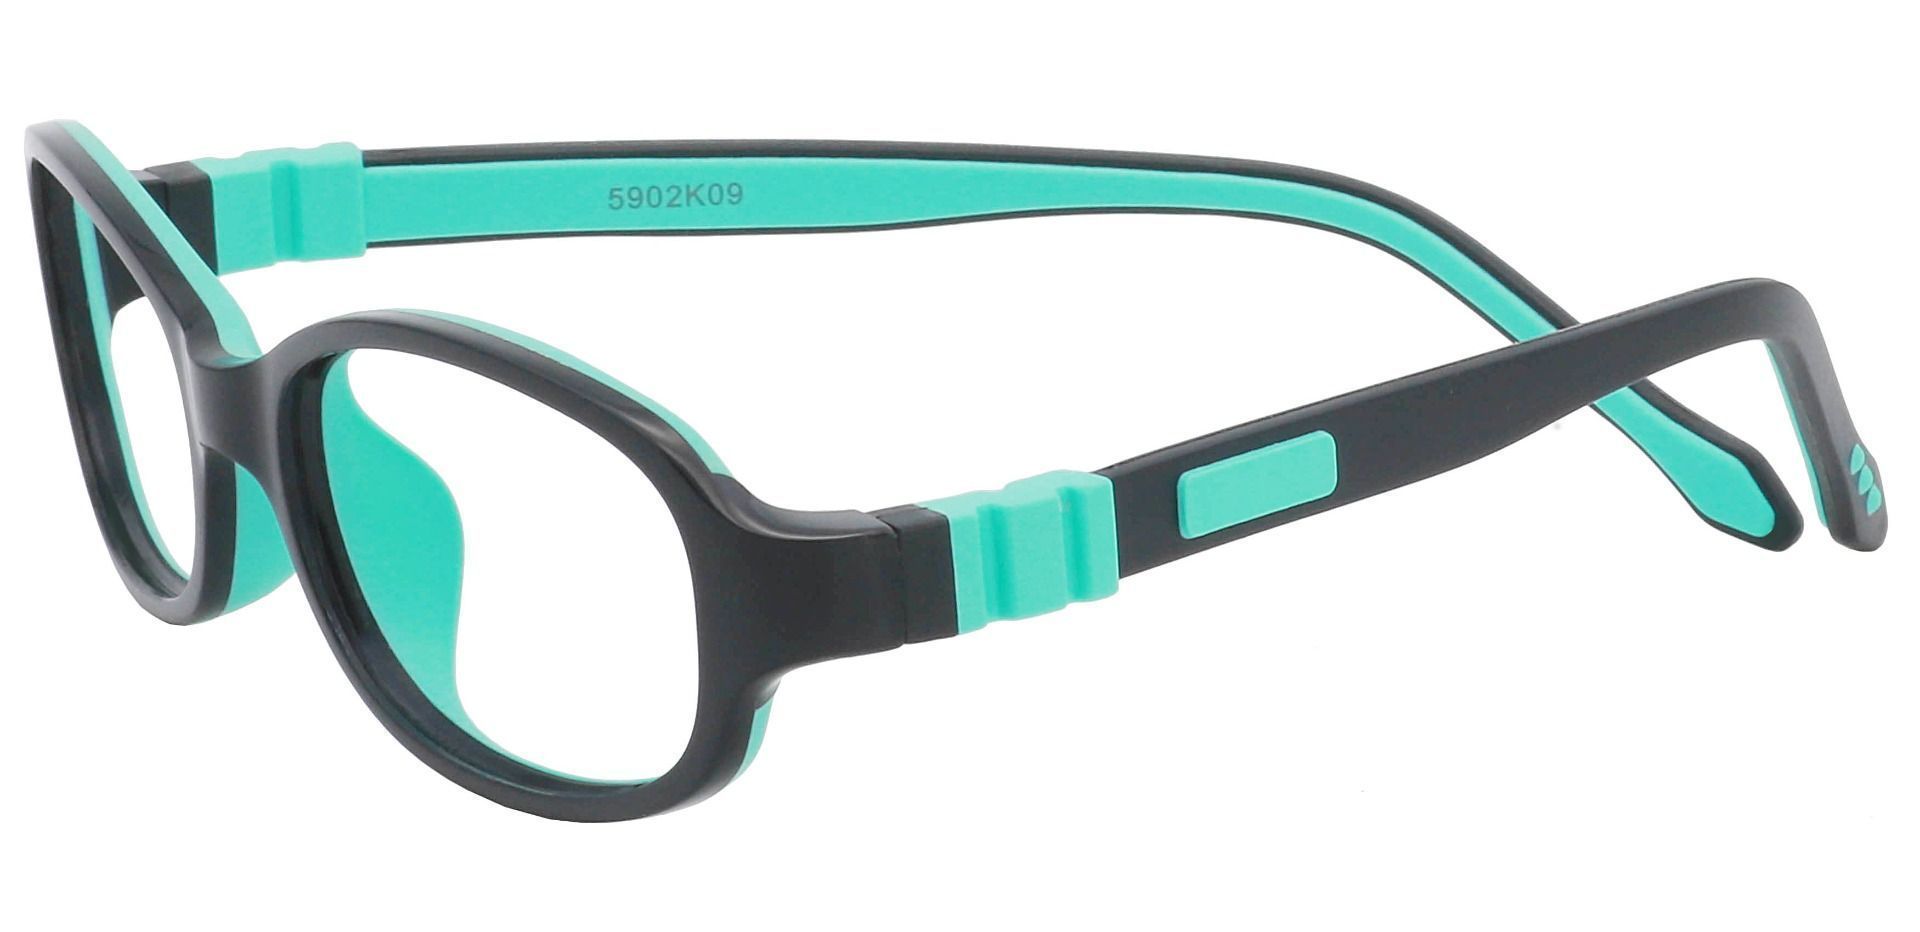 Toucan Rectangle Blue Light Blocking Glasses - Black/aqua